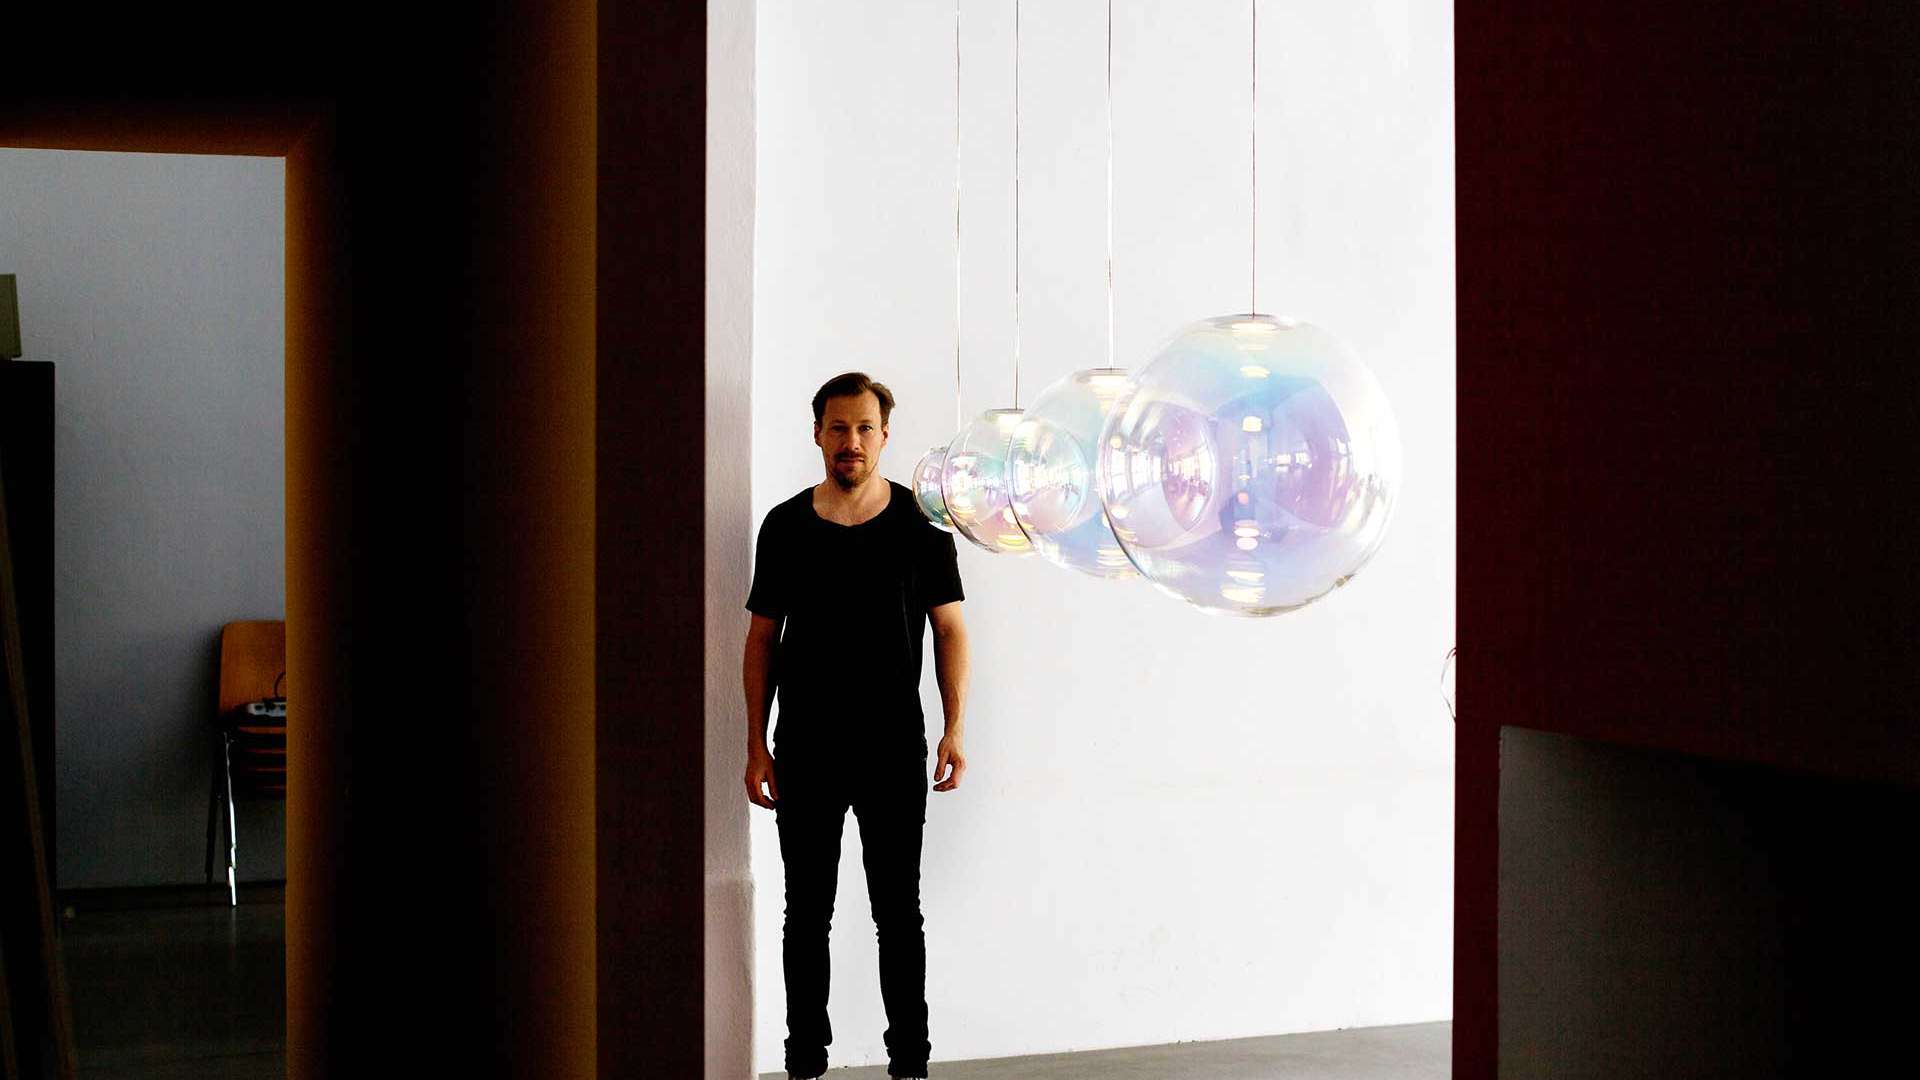 Das Glas von Sebastian Scherers Objekt »Iris« ist mit einer Spezialschicht überzogen – diese sorgt für unterschiedliche Farbwirkungen im Raum. neocraft.com​​​​​​​